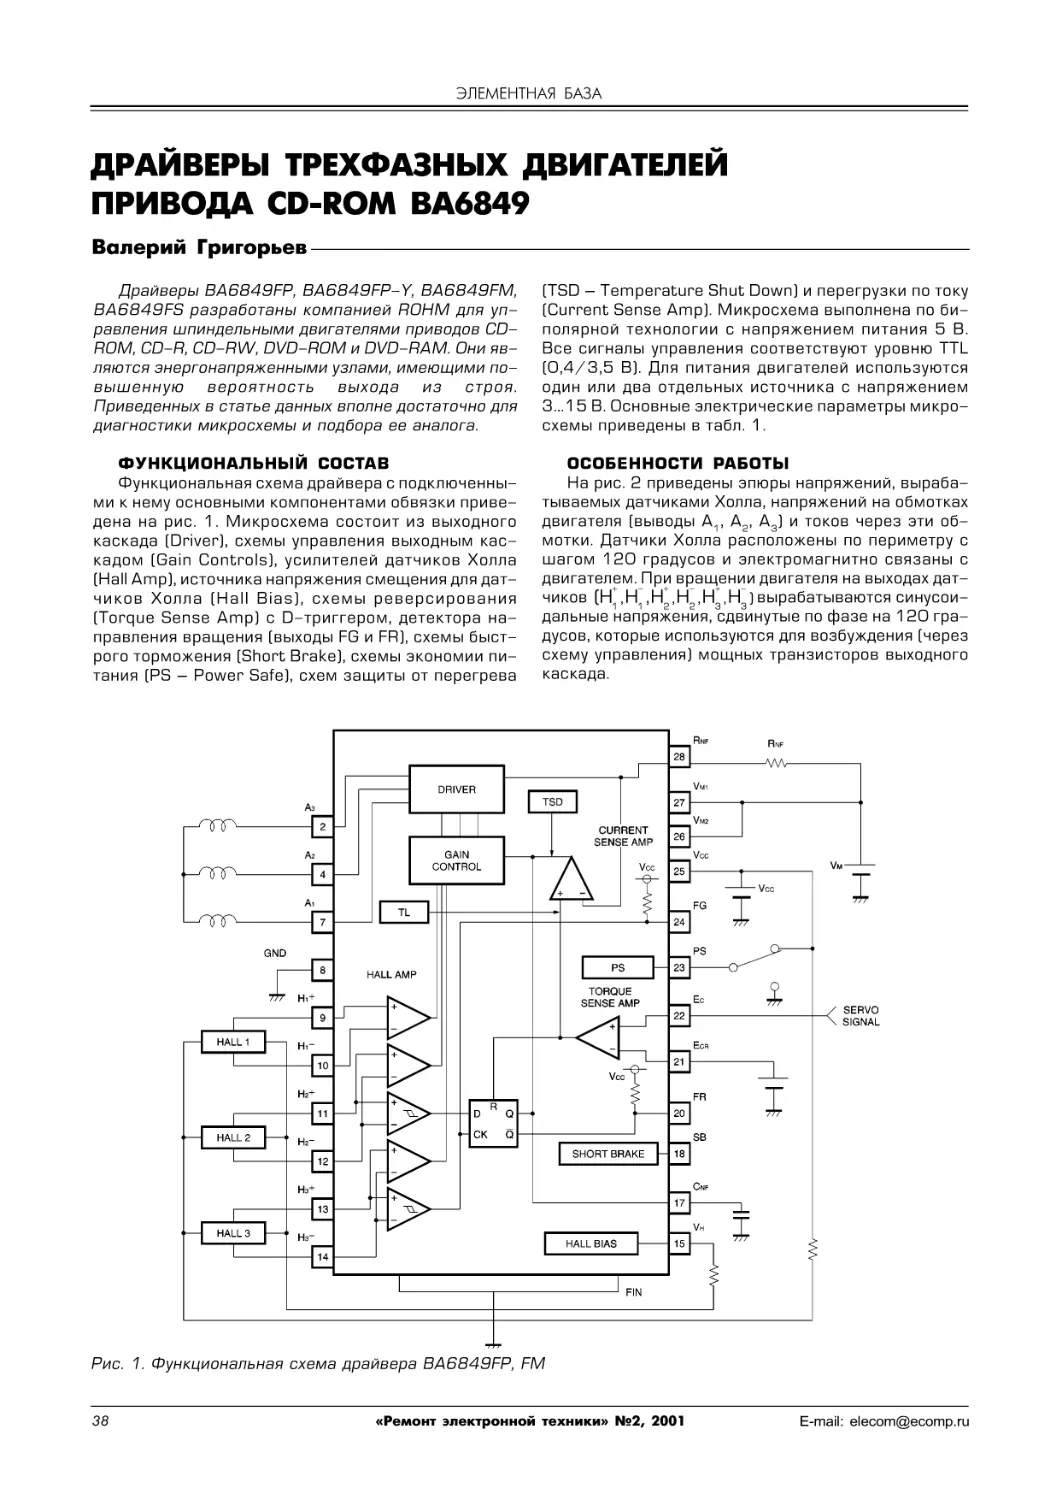 Григорьев В. Драйверы трехфазных двигателей привода CD-ROM BA6849